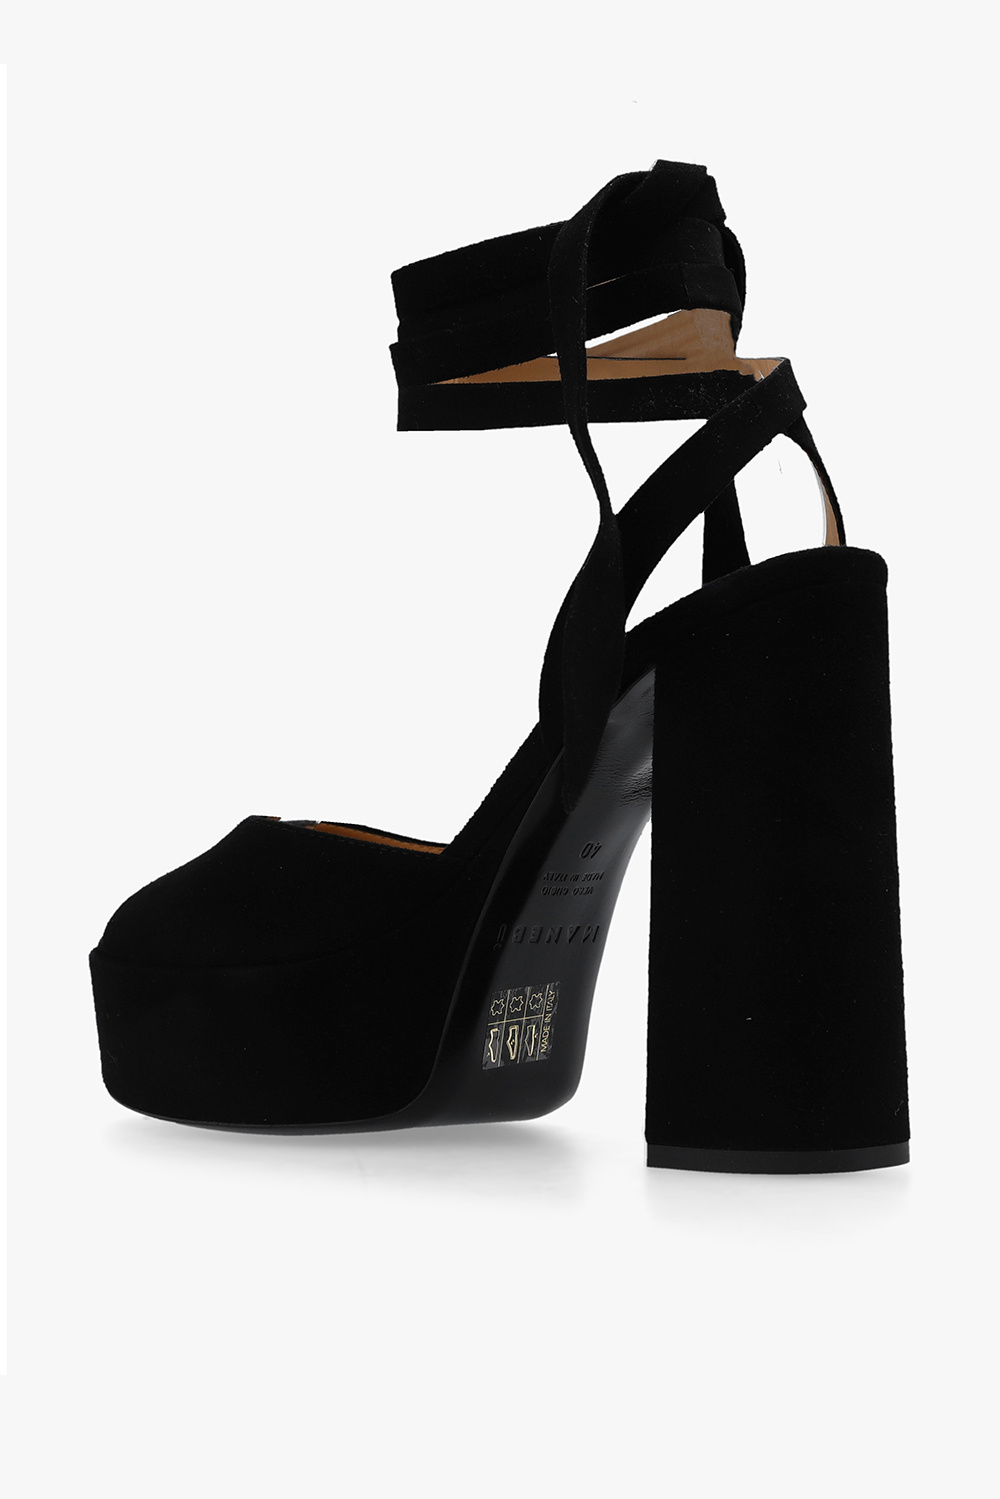 Manebí ‘Bellini’ heeled sandals